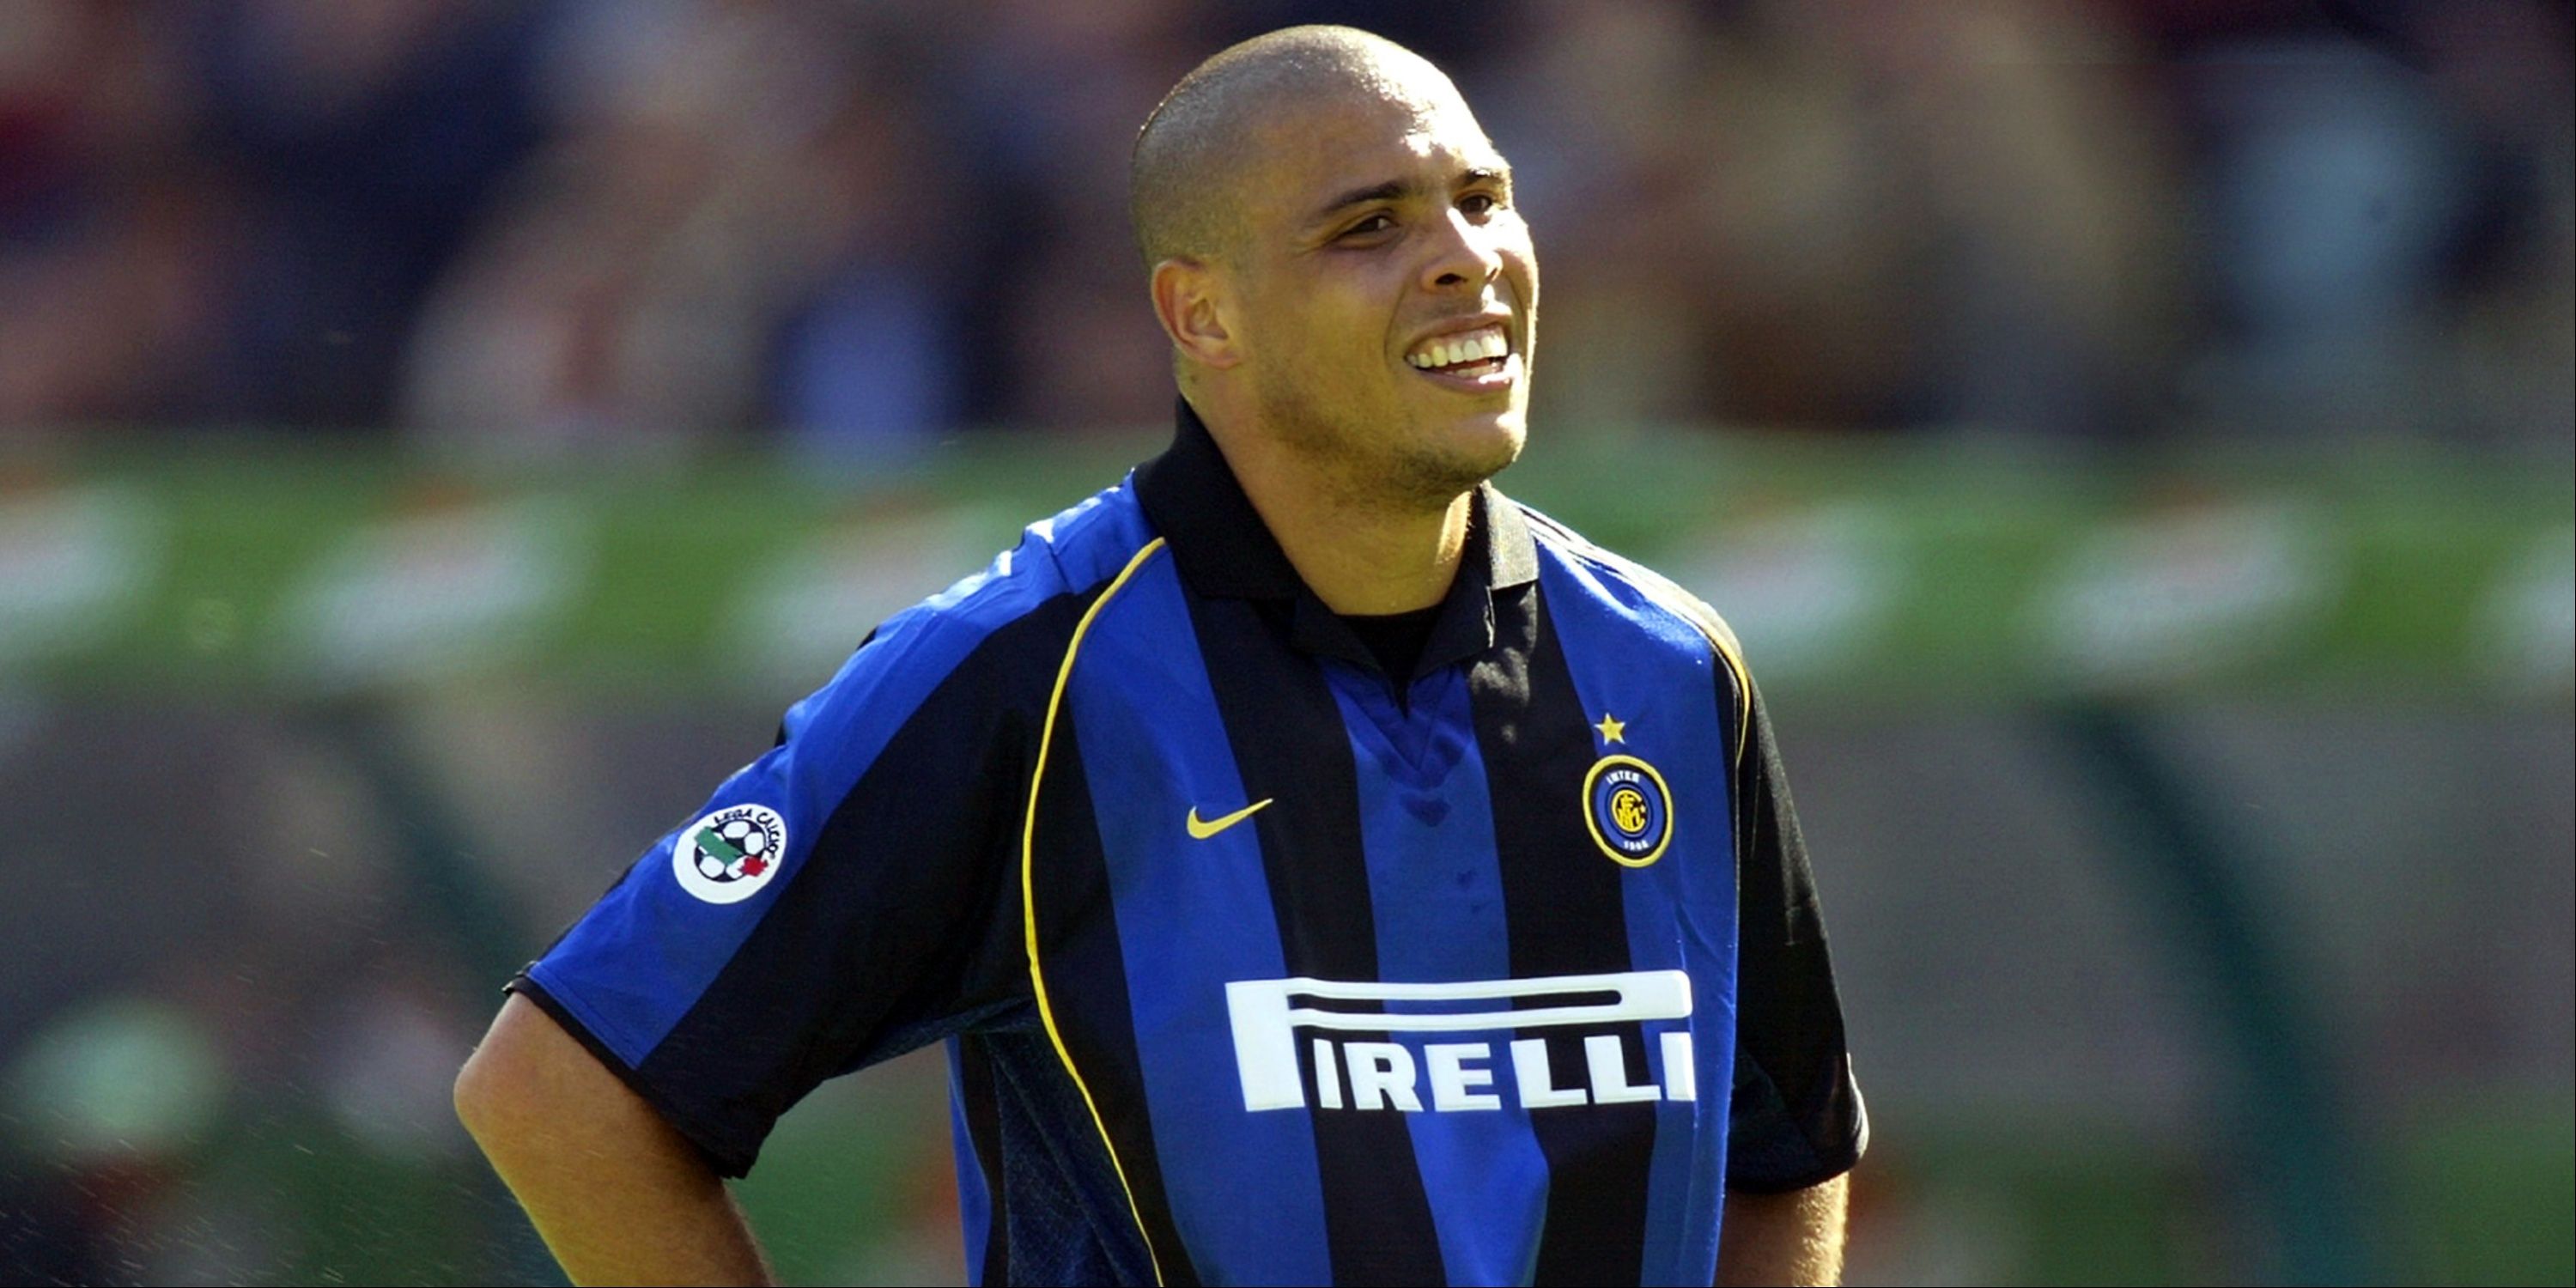 Inter Milan's Ronaldo looks dejected.